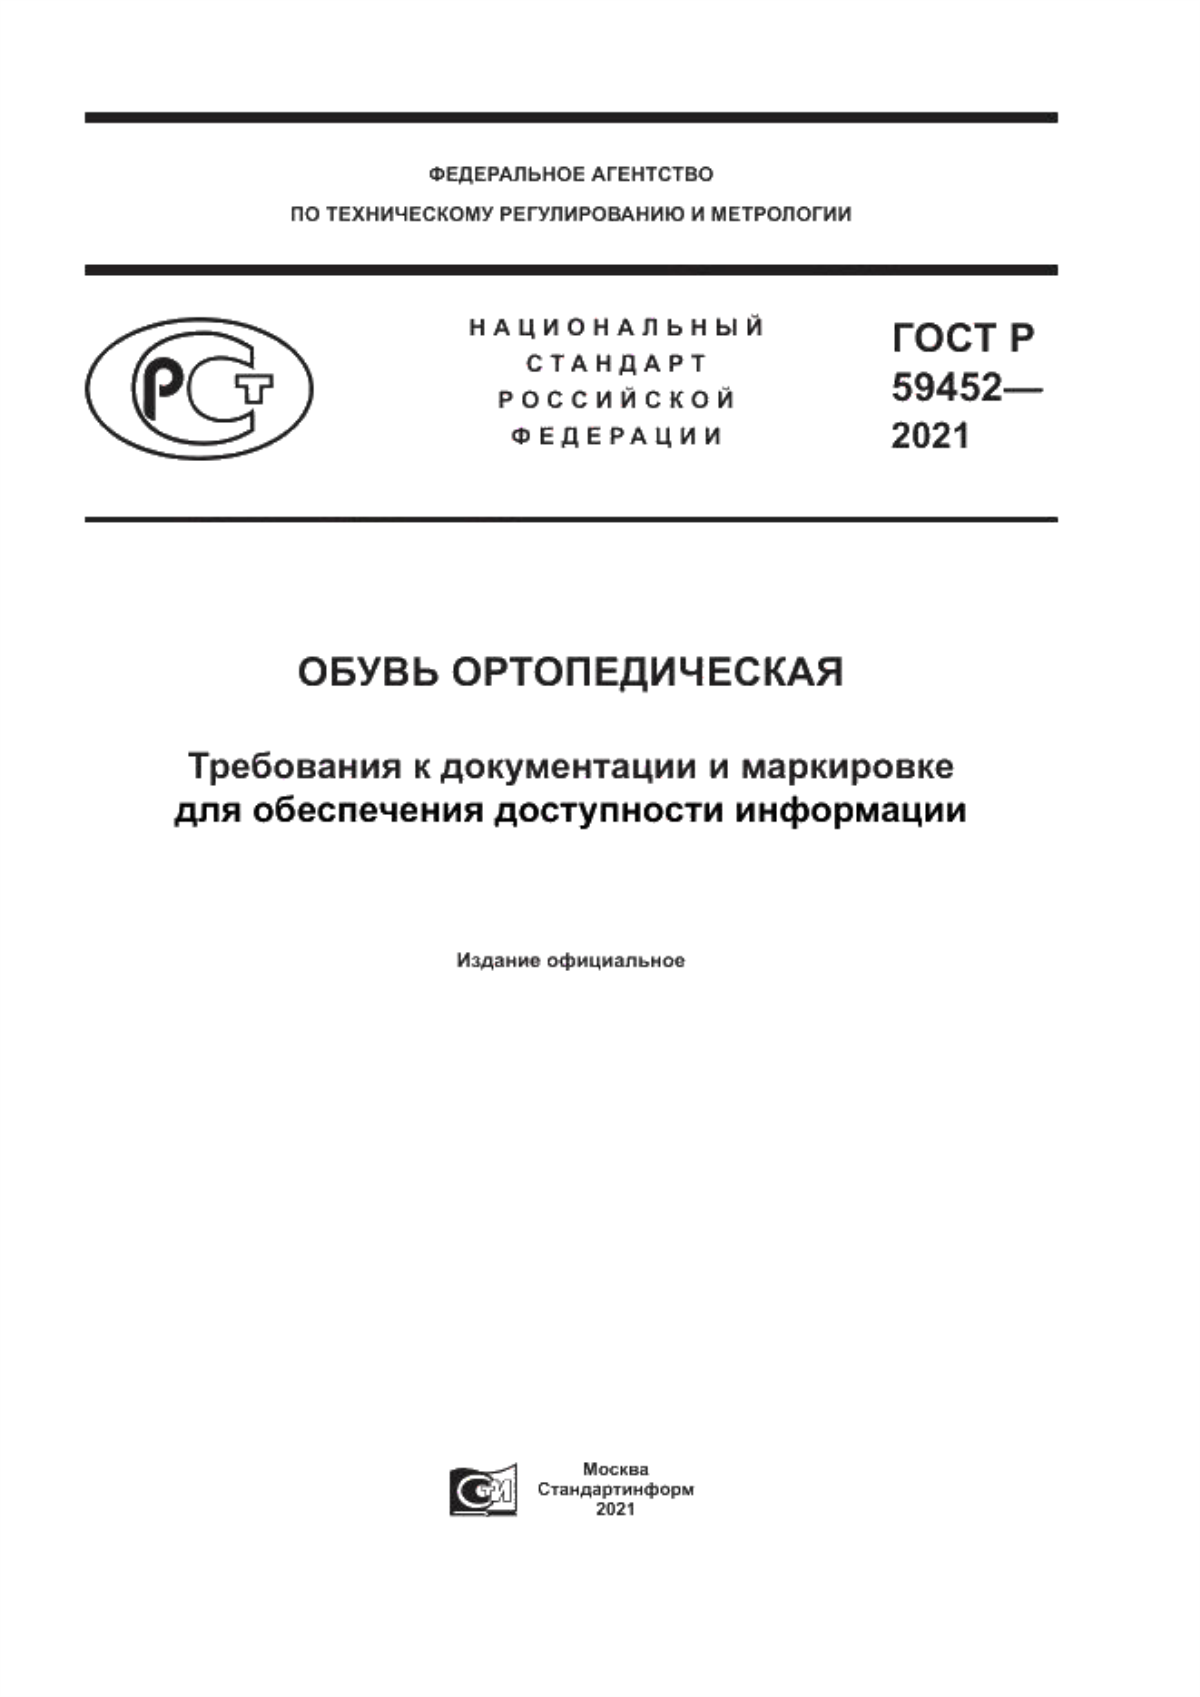 ГОСТ Р 59452-2021 Обувь ортопедическая. Требования к документации и маркировке для обеспечения доступности информации